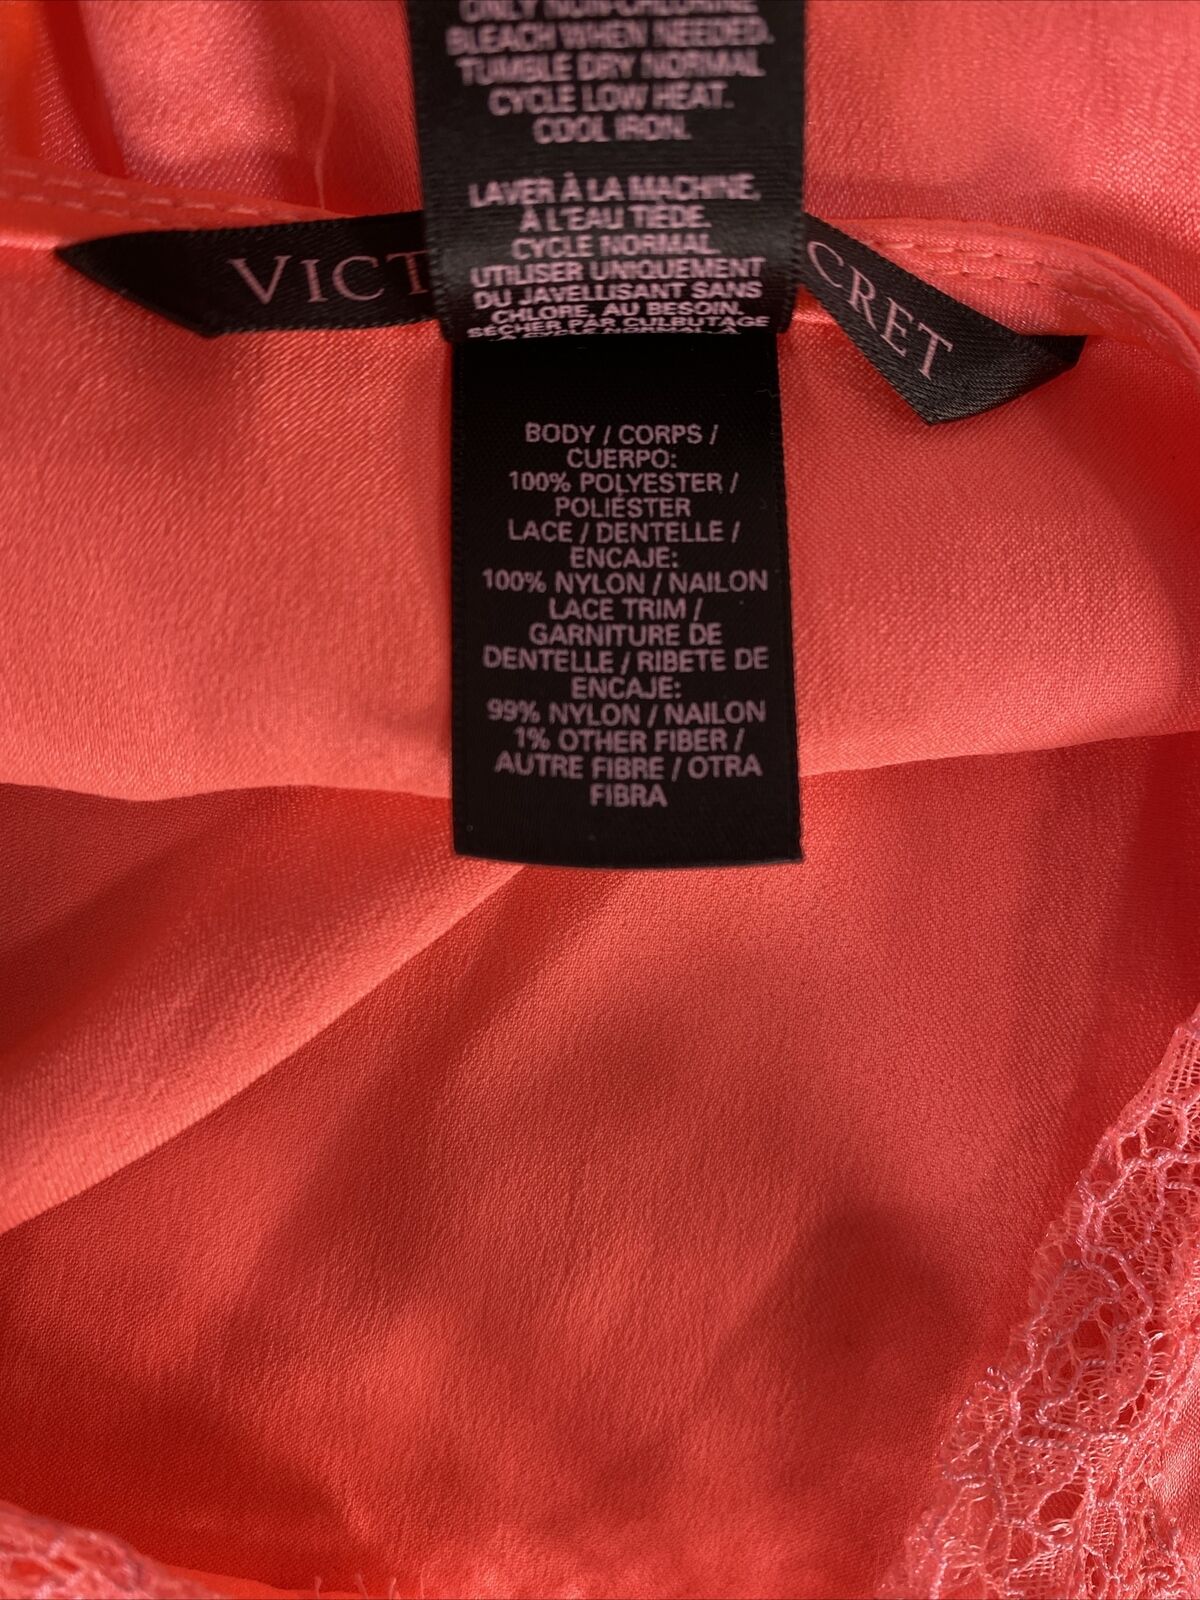 Victoria's Secret Top de noche de lencería de encaje con tiras rosa/naranja para mujer - S